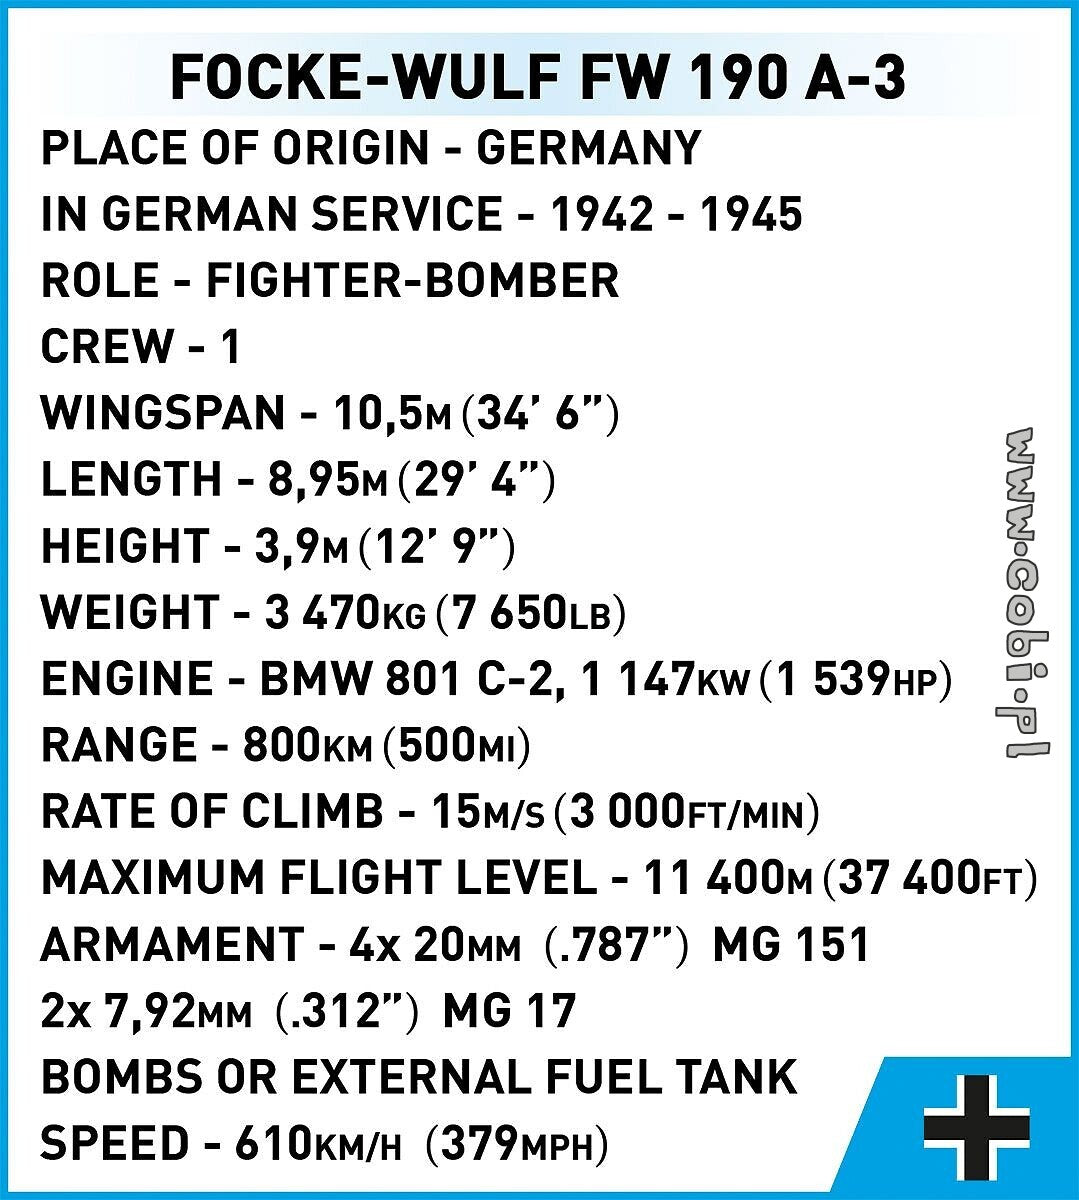 Cobi Focke-Wulf FW 190-A3 COBI-5741